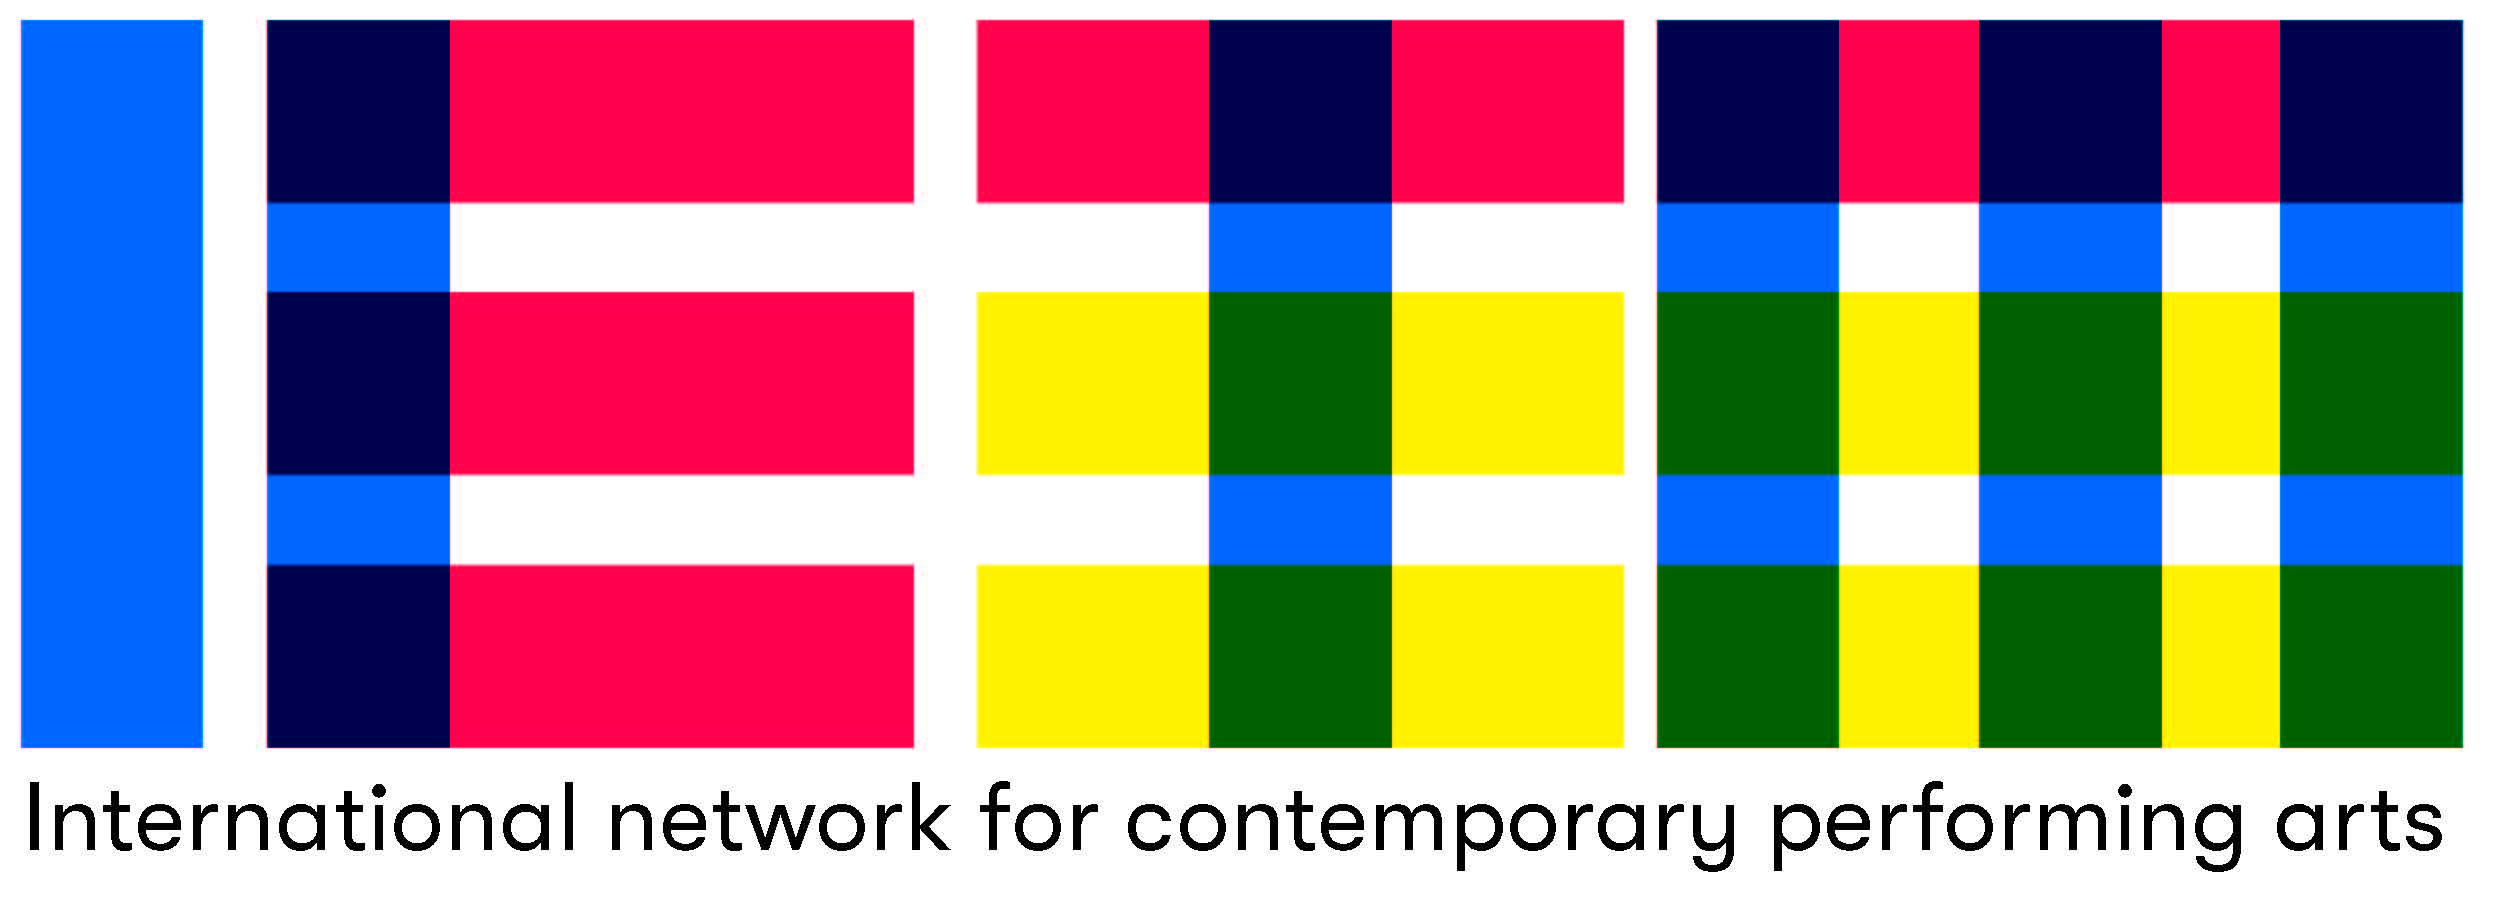 Pildil on võrgustiku IETM logo, mis koosneb sinistest, punastest ja kollastest paksudest triipudest, mis moodustavad sõna IETM. Logo all on kirjas "International network for contemporary performing arts".